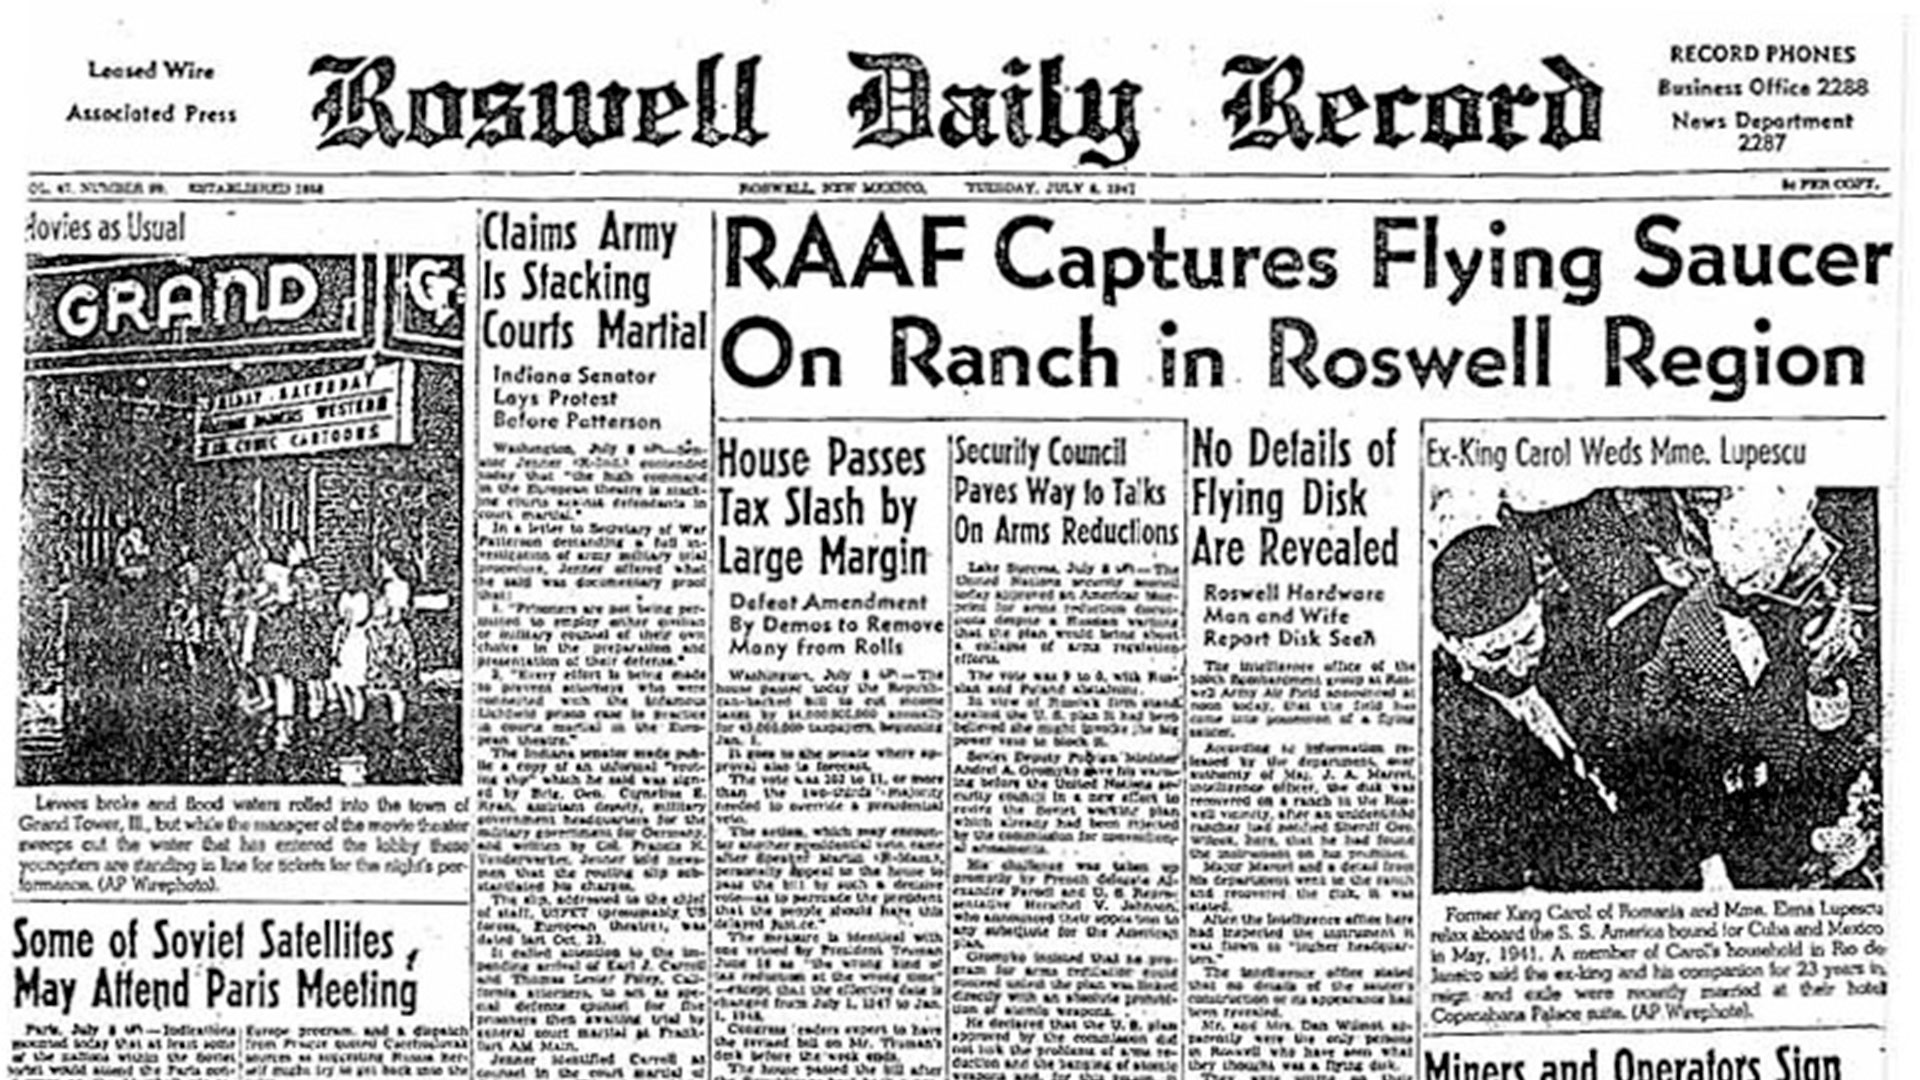 El diario local de Roswell. el 8 de julio de 1947, publicó en primera plana que se habían encontrado restos de una nave extraterrestre. Un general norteamericano salió a desmentirlo al día siguiente. En ese titular se basó todo lo que siguió